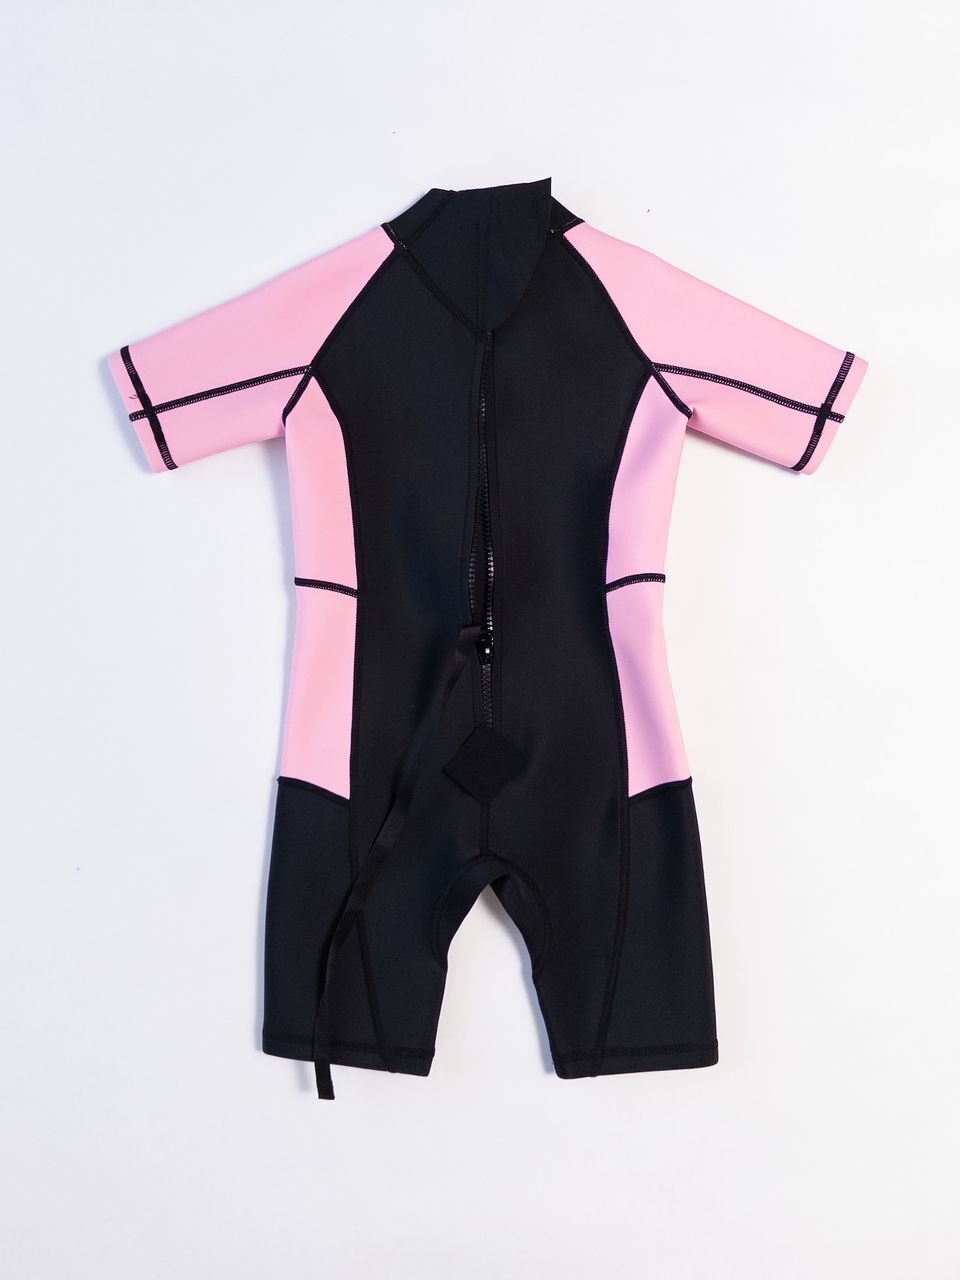 Неопреновый детский гидрокостюм  для девочки цвет черный/розовый на рост 104 см 3-4 года Primark